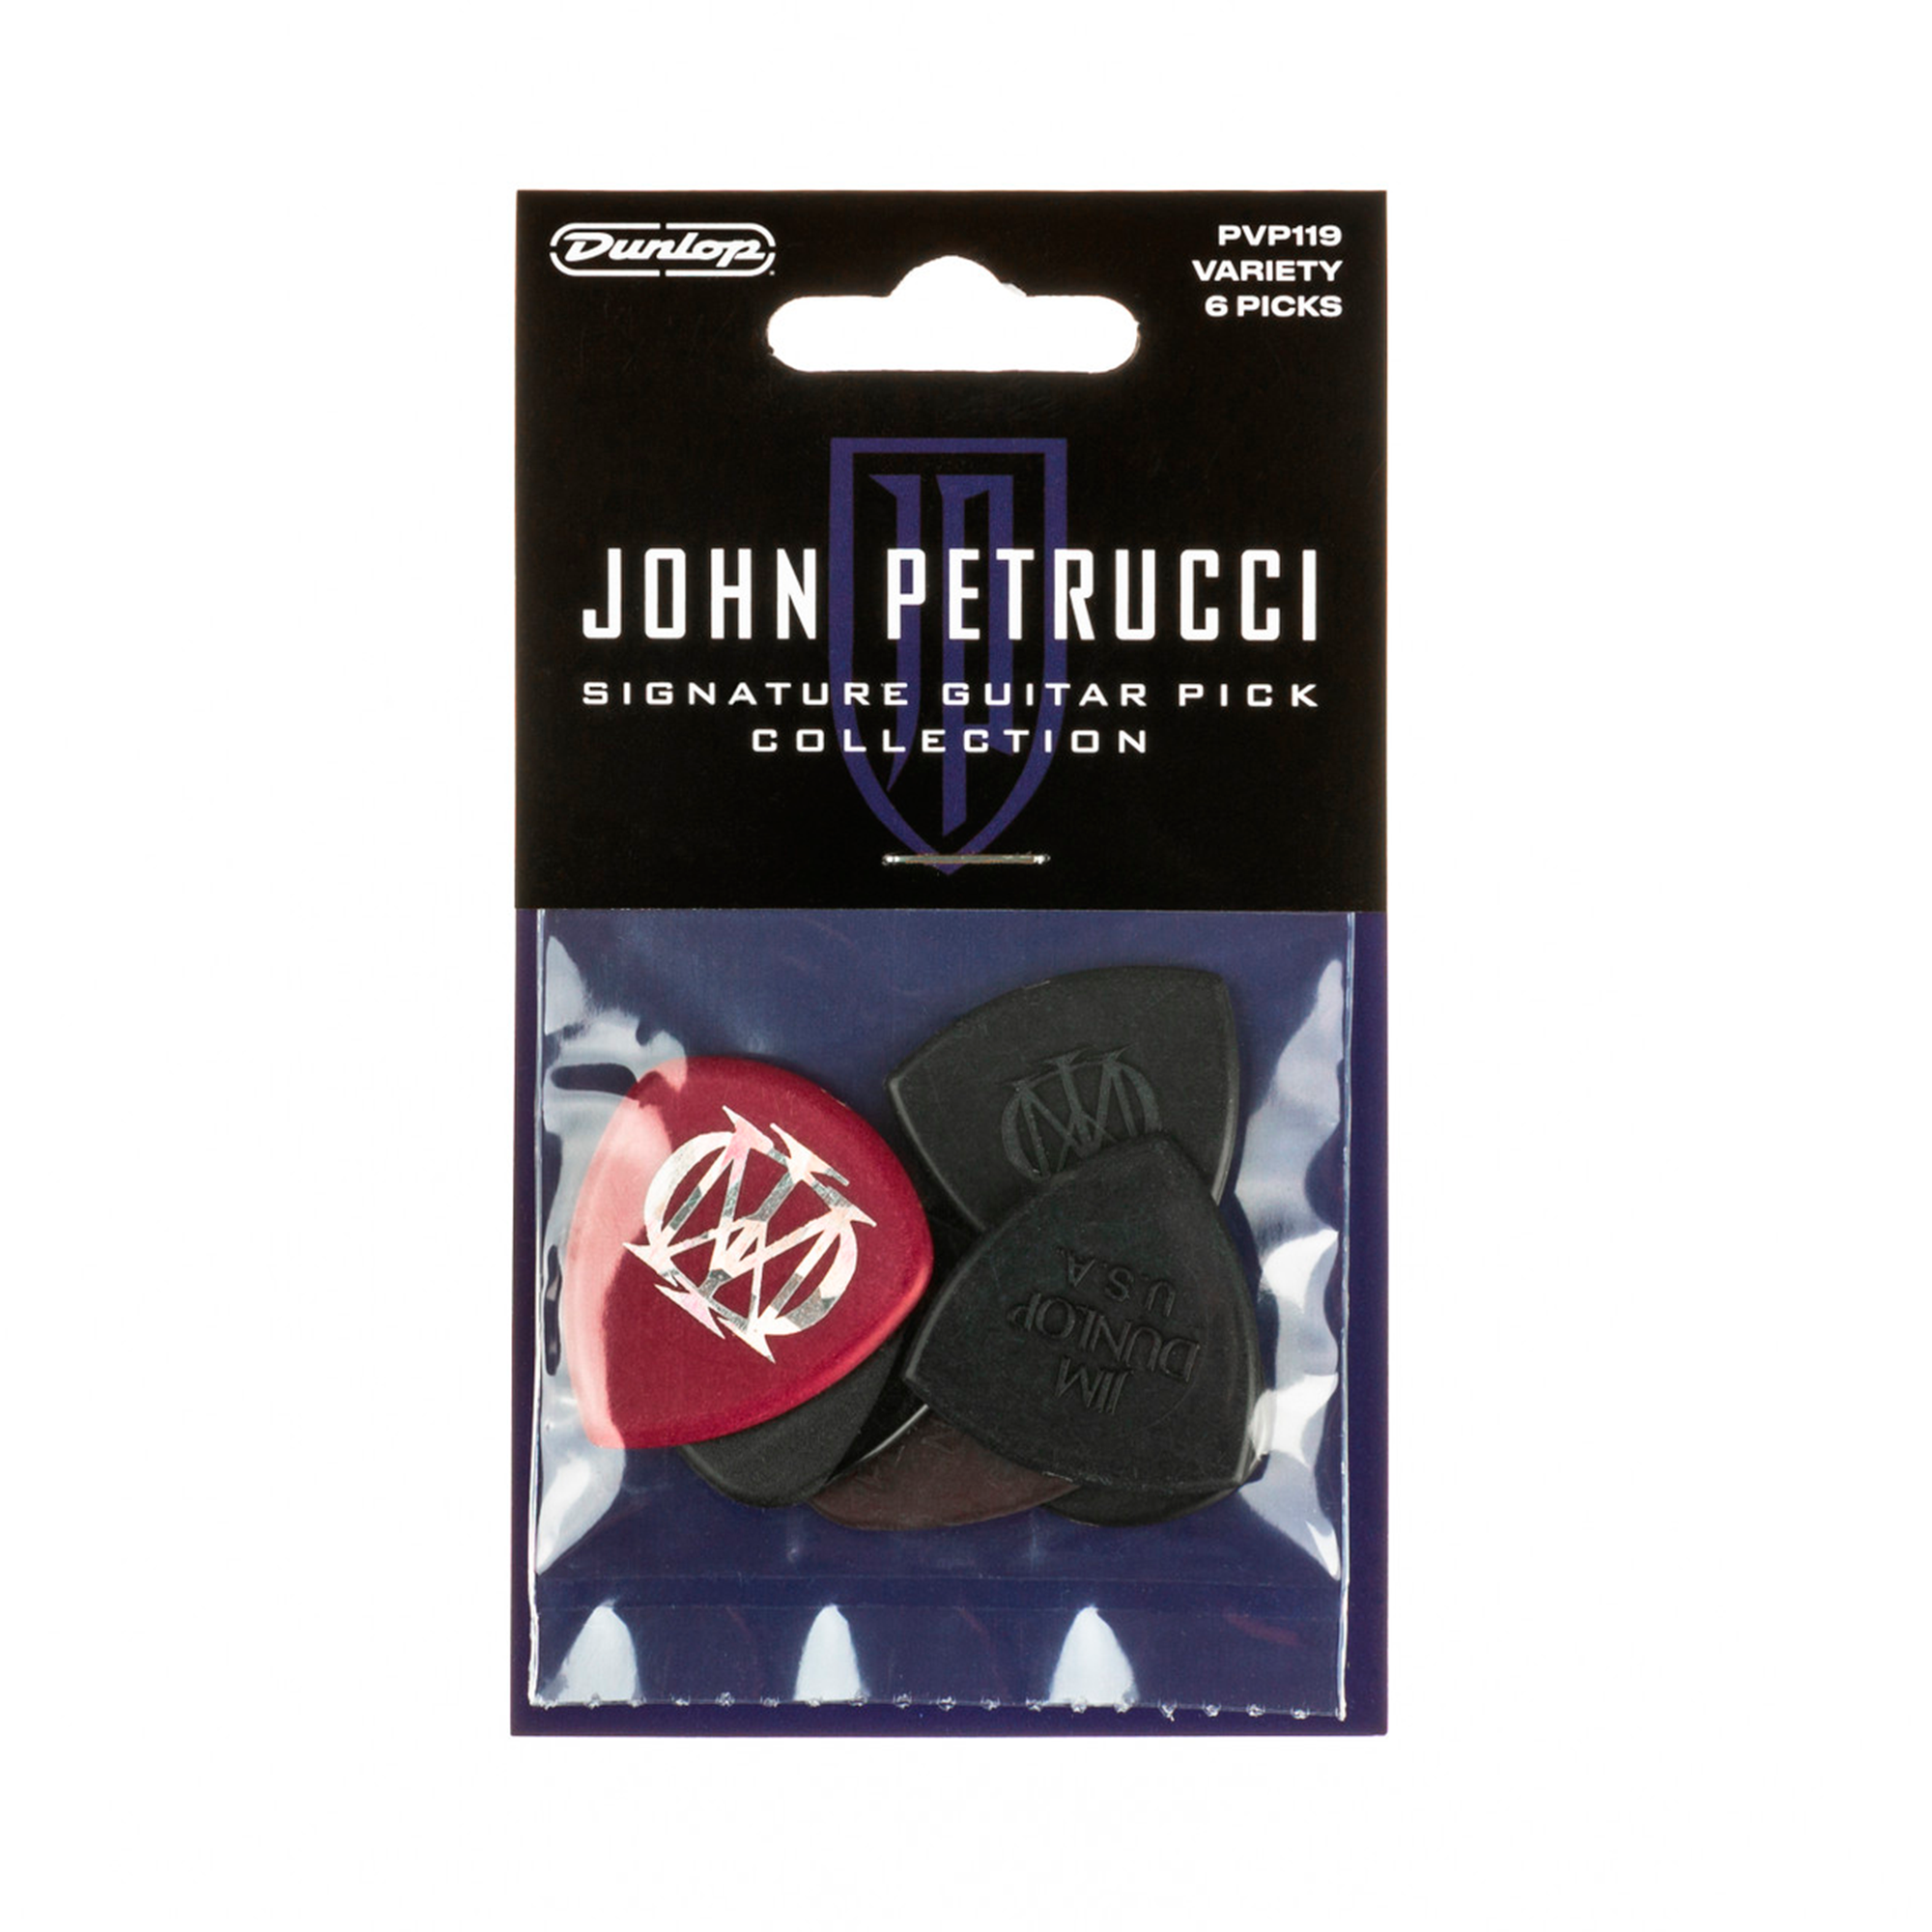 Pack de uñas Dunlop - Jhon Petrucci Signature PVP119